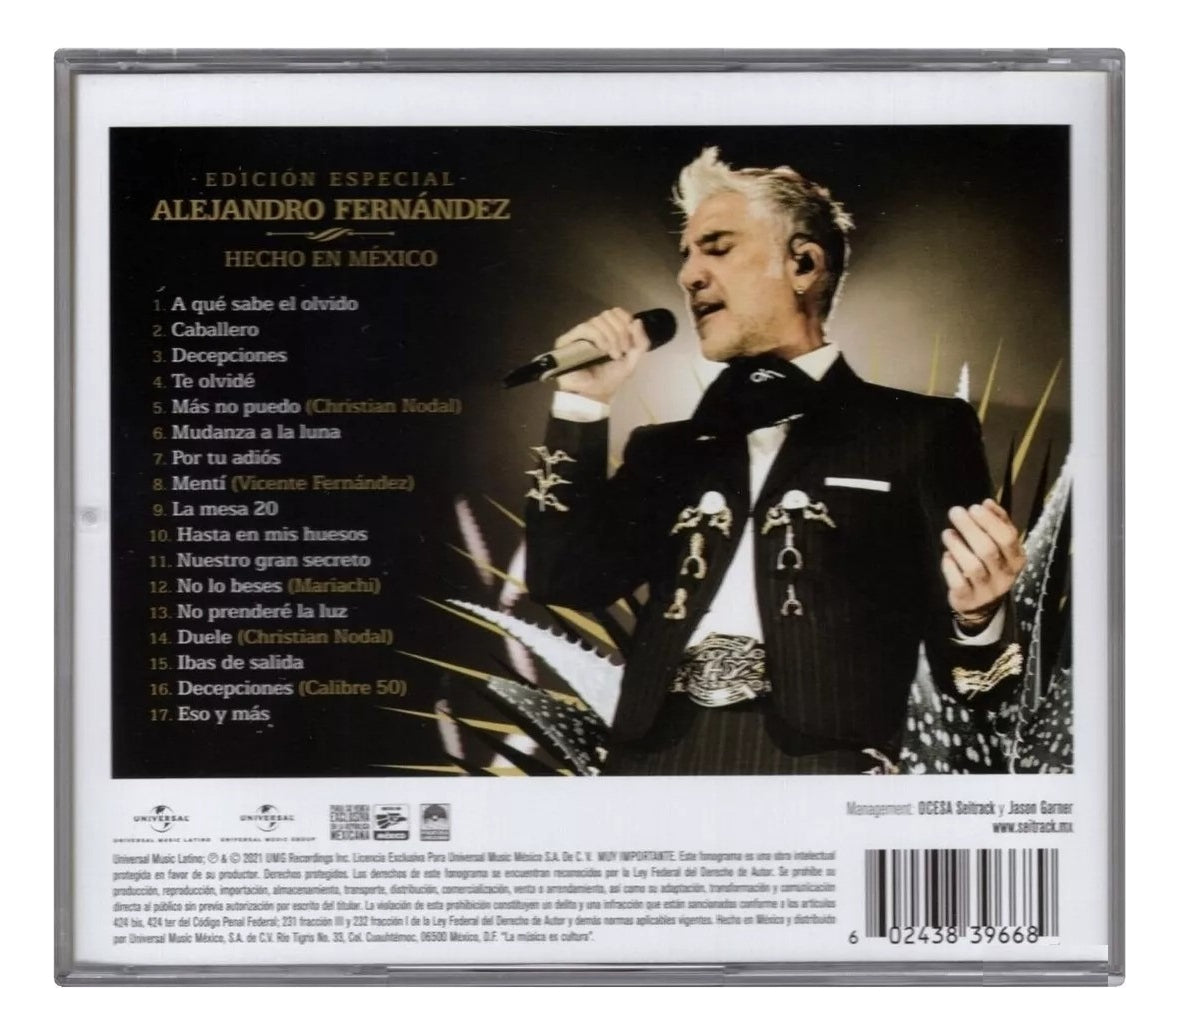 Alejandro Fernandez Hecho En Mexico Edicion Especial Disco Cd